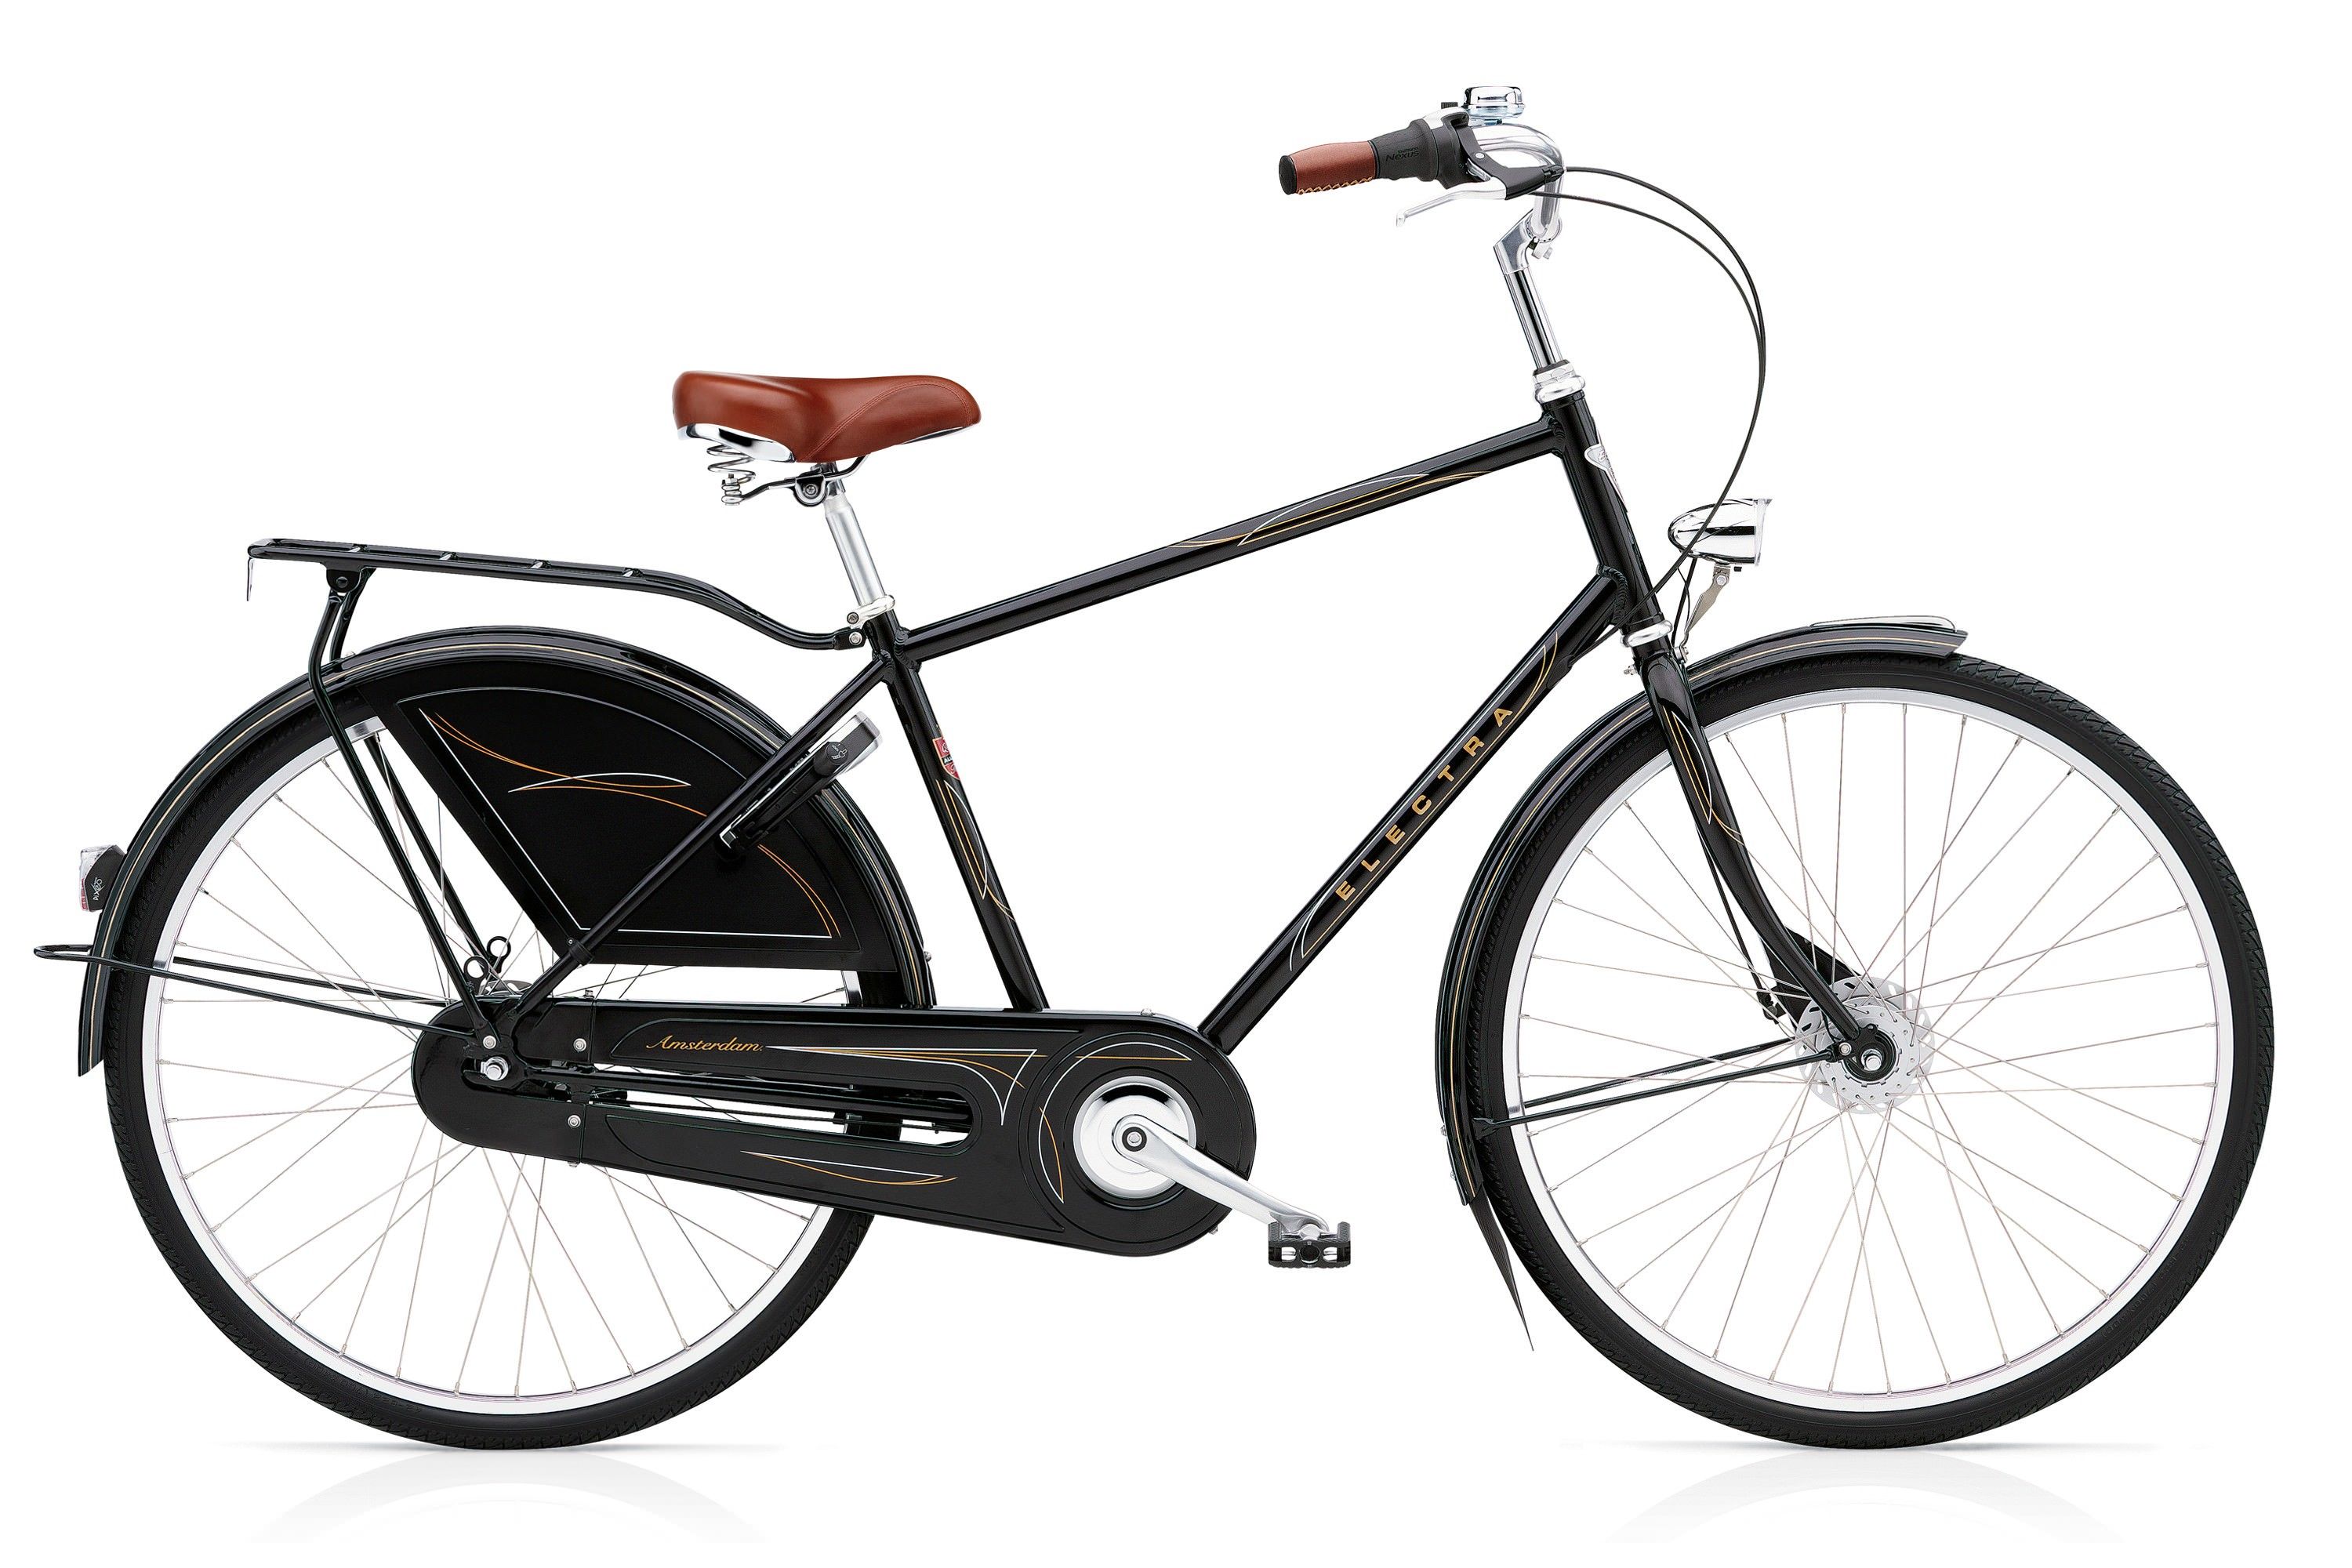  Отзывы о Велосипеде Electra Amsterdam Royal 8i Mens 2017